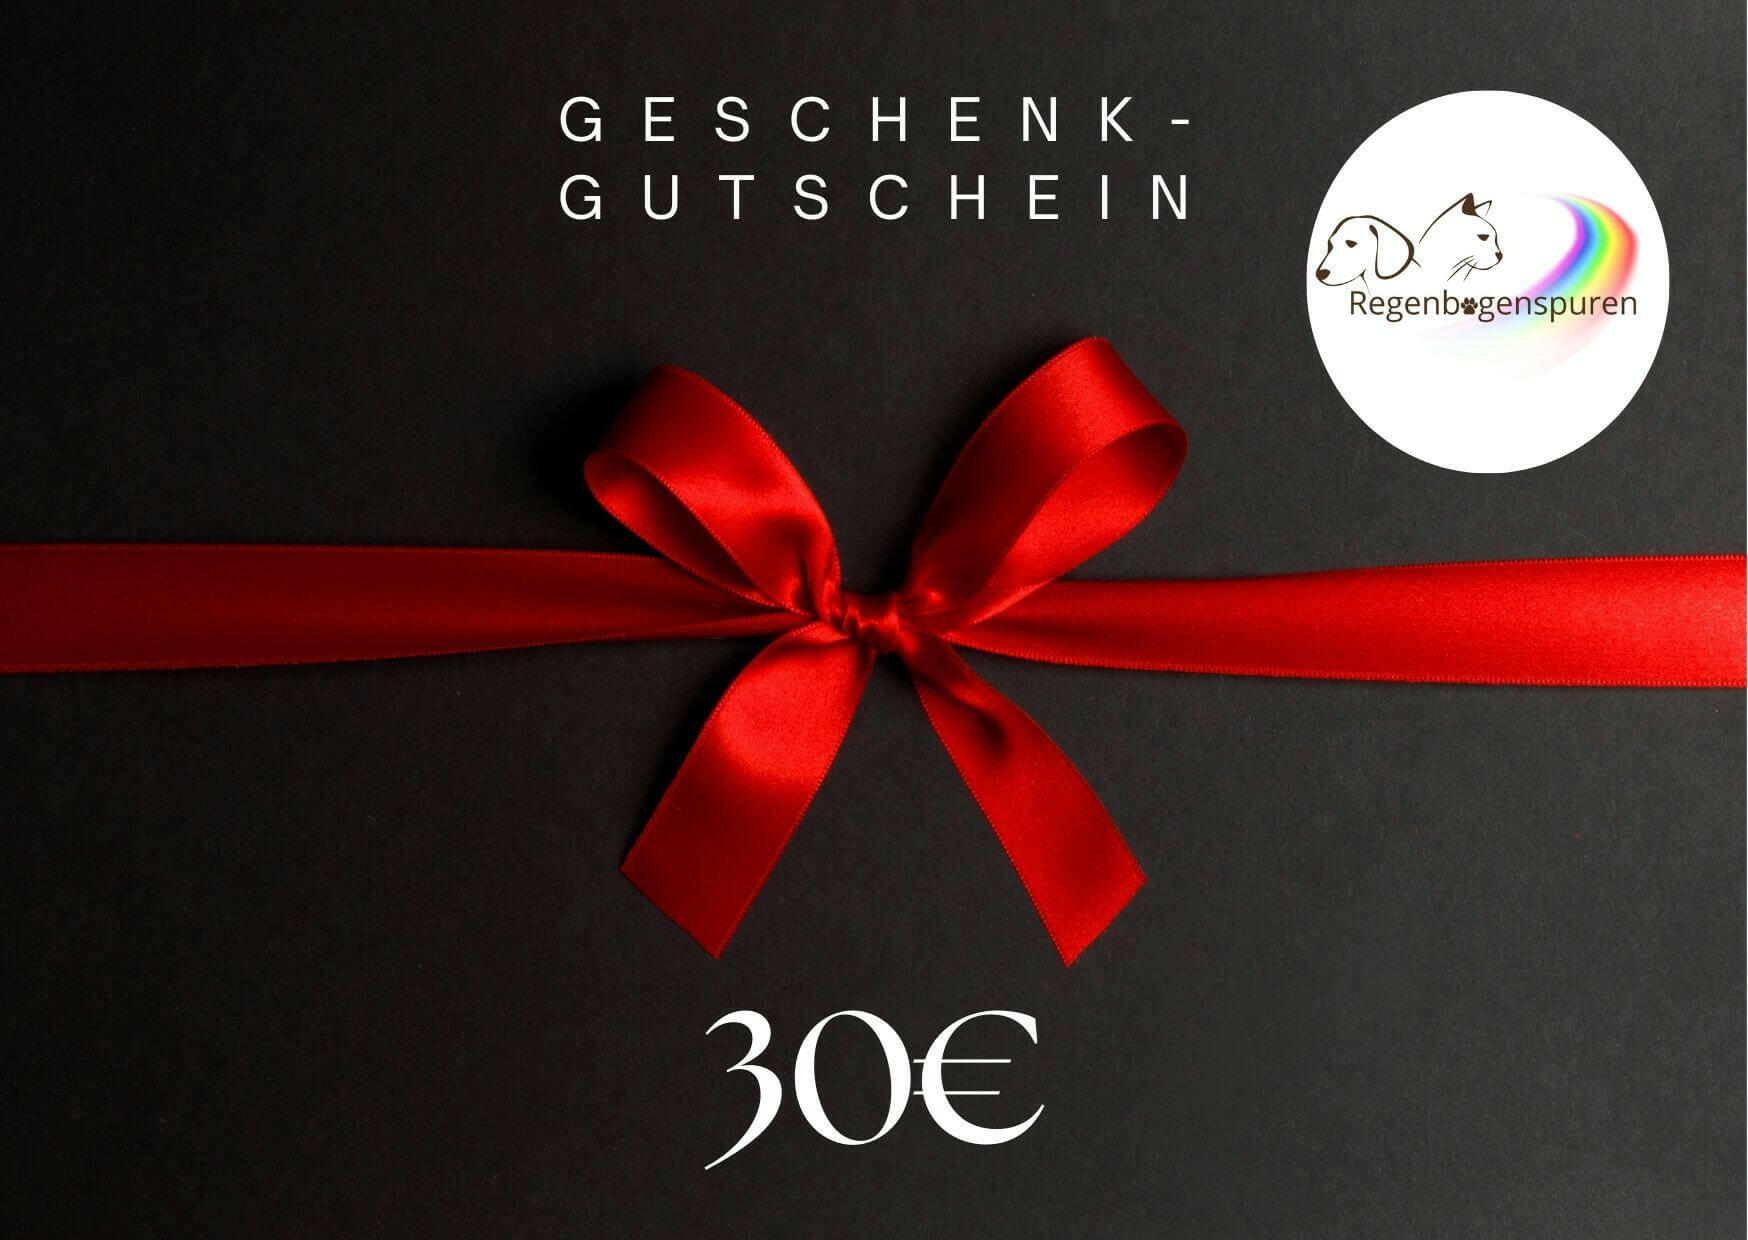 Schwarzer Geschenkgutschein für 30 Euro mit roter Schleife und Logo von Regenbogenspuren.